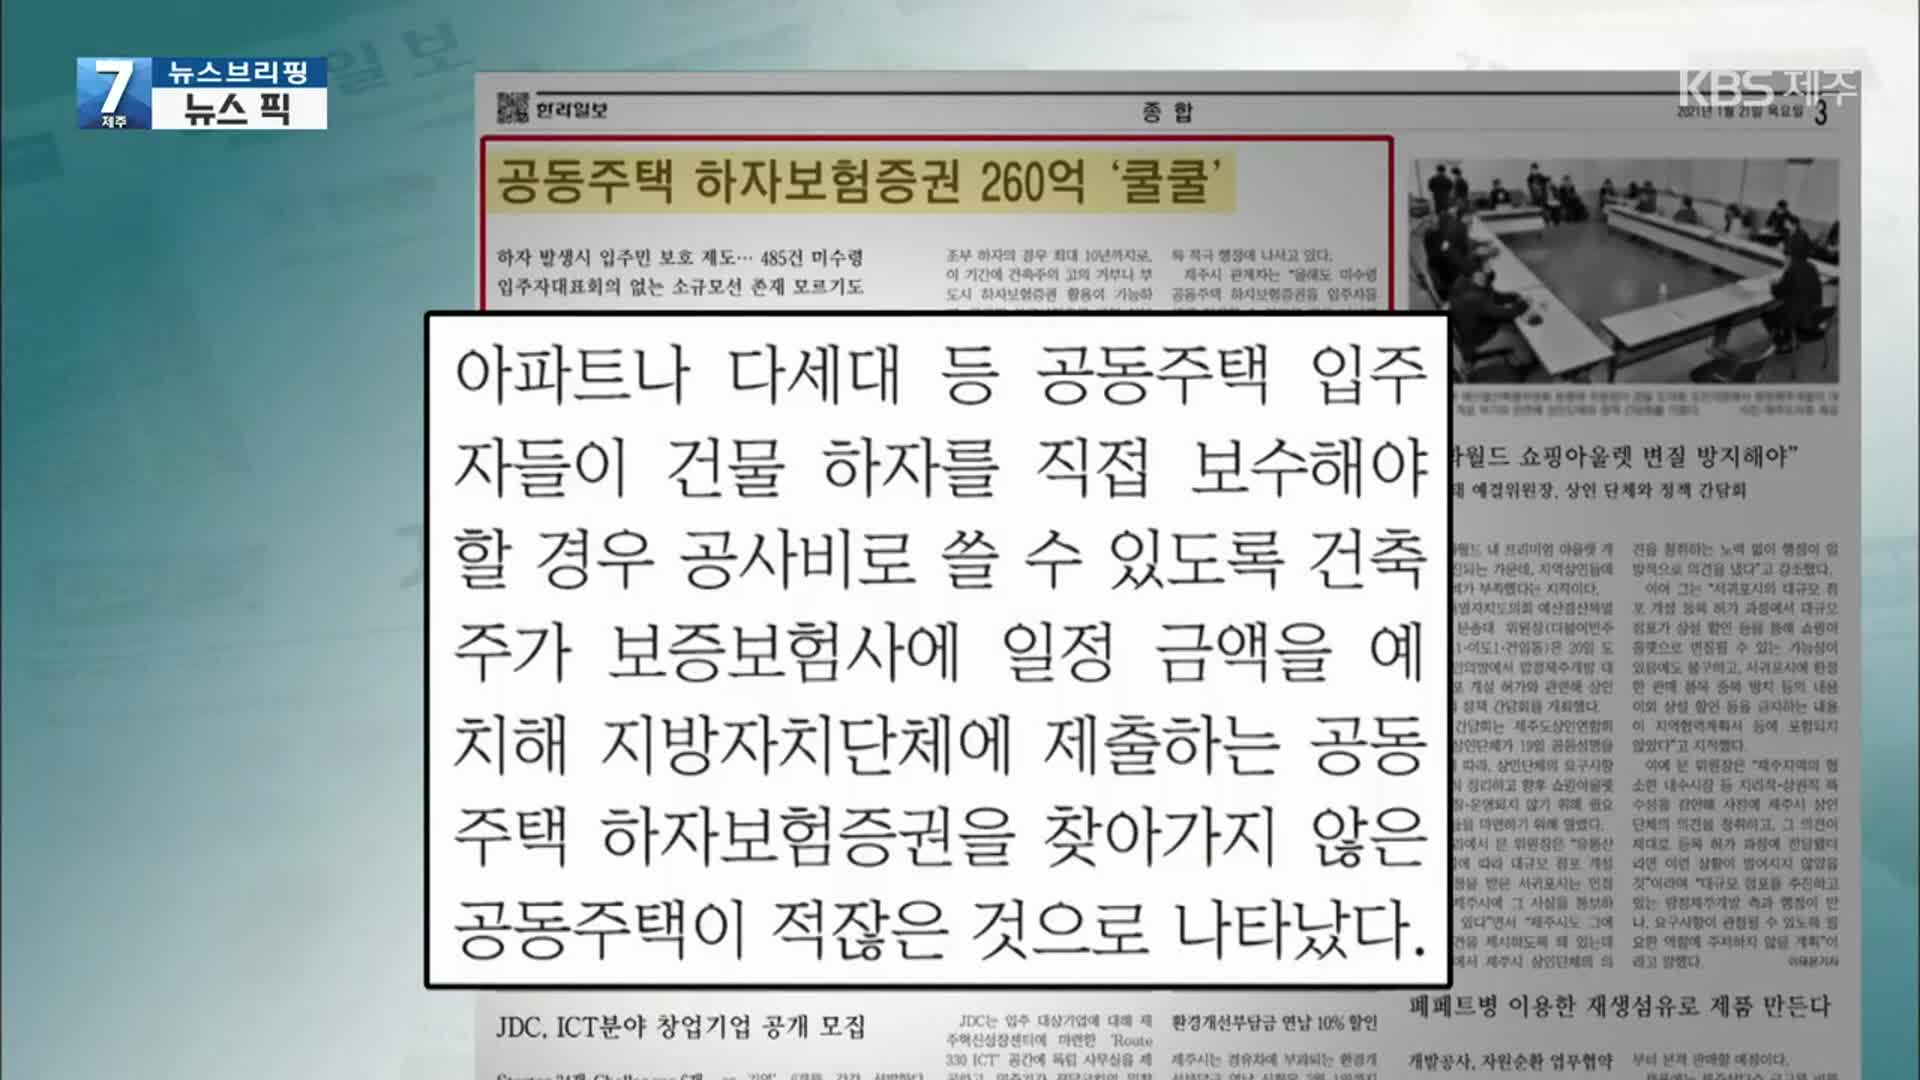 [뉴스브리핑] 한라일보 “공동주택 하자보험증권 260억 쿨쿨” 외